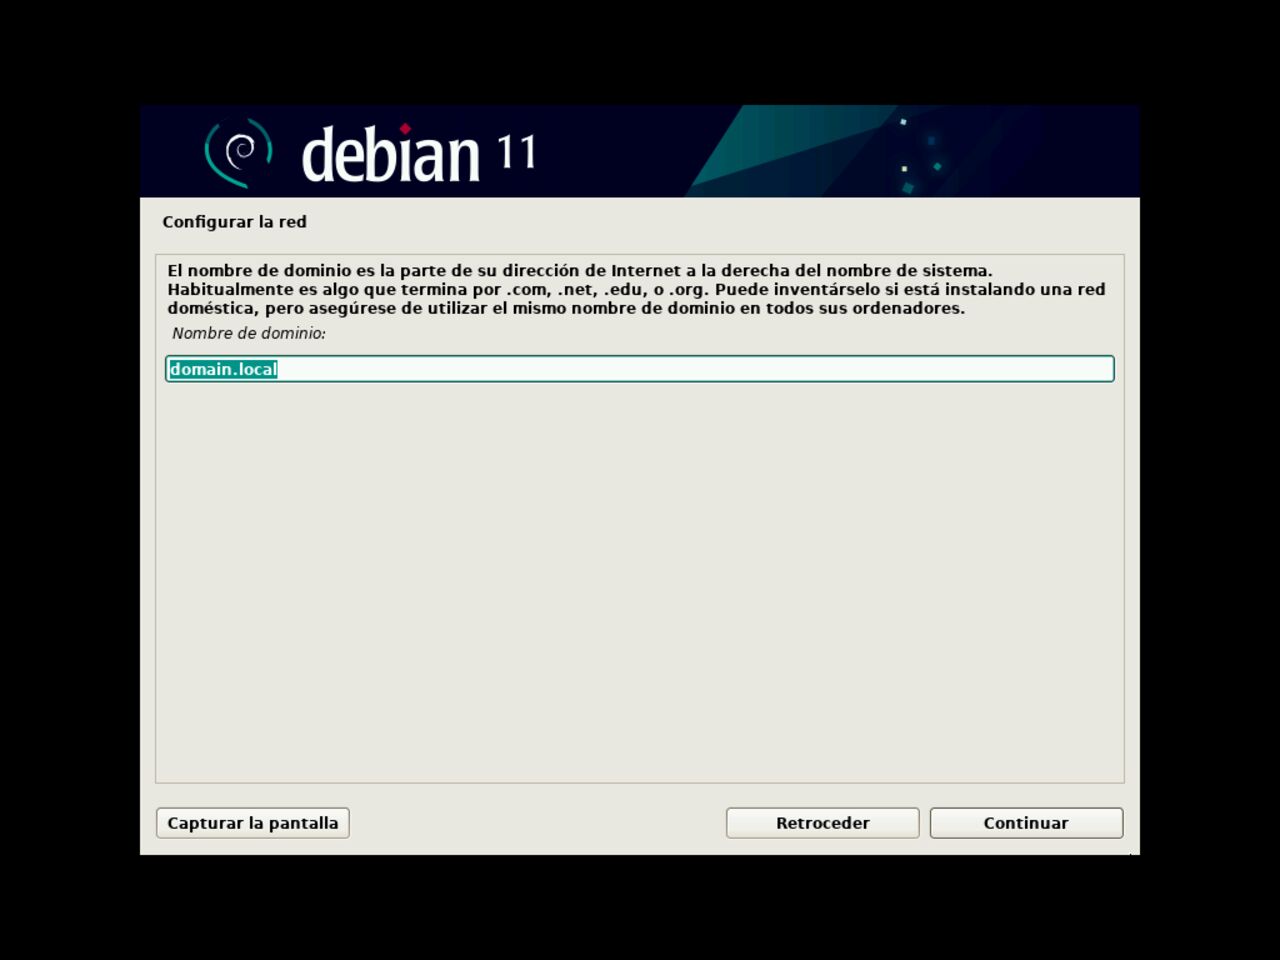 Mi primero laptop con Linux: elija el nombre de dominio para la configuración de la red durante la instalación de Debian